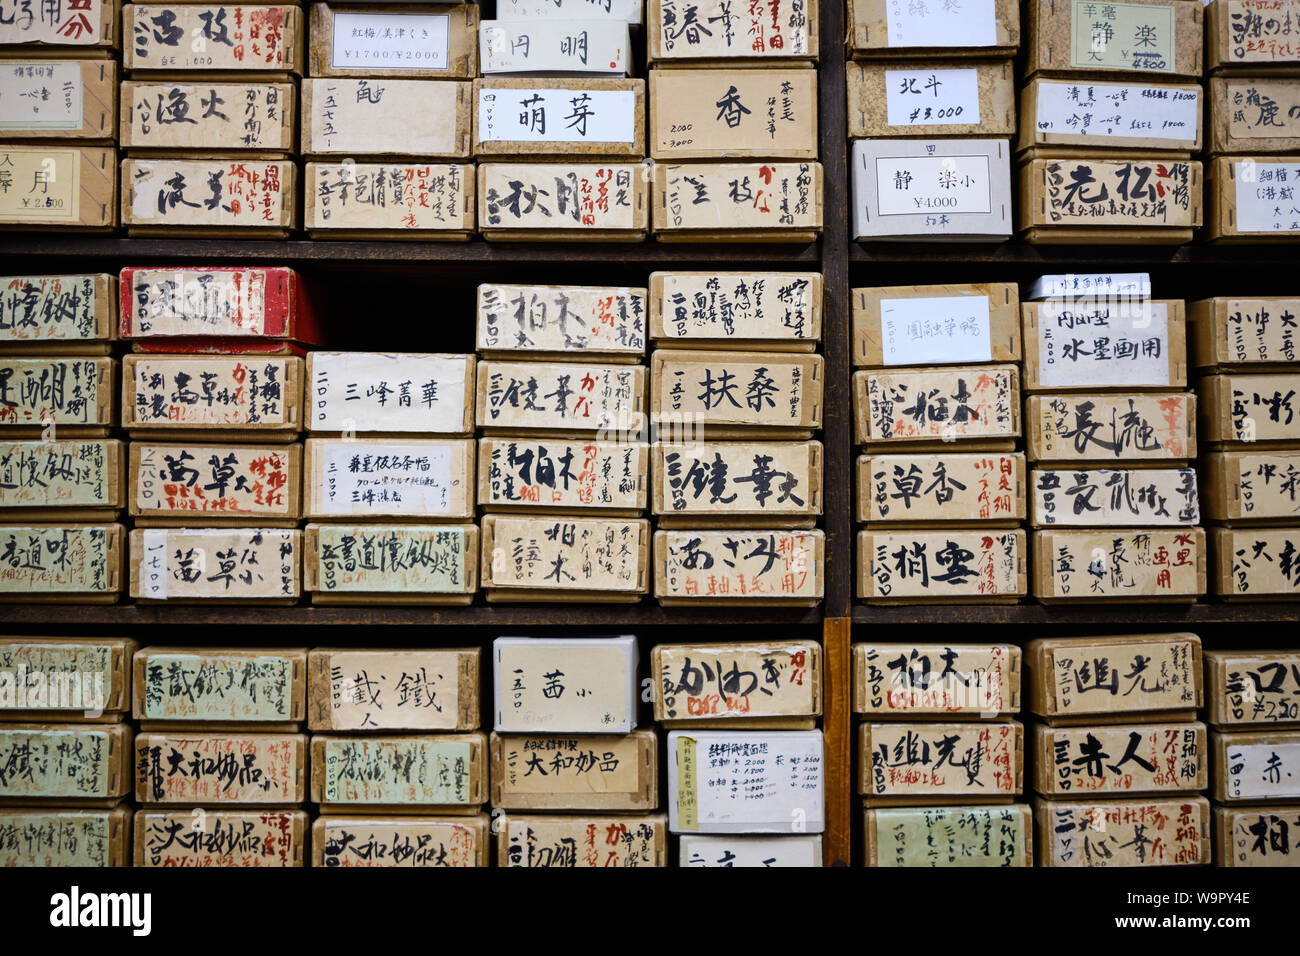 Nara/Japan - 3 August 2019: Viele Felder holding Japanischen Schrift bürsten gegen eine Wand in einem Geschäft in Nara, Japan abgelegt. Stockfoto